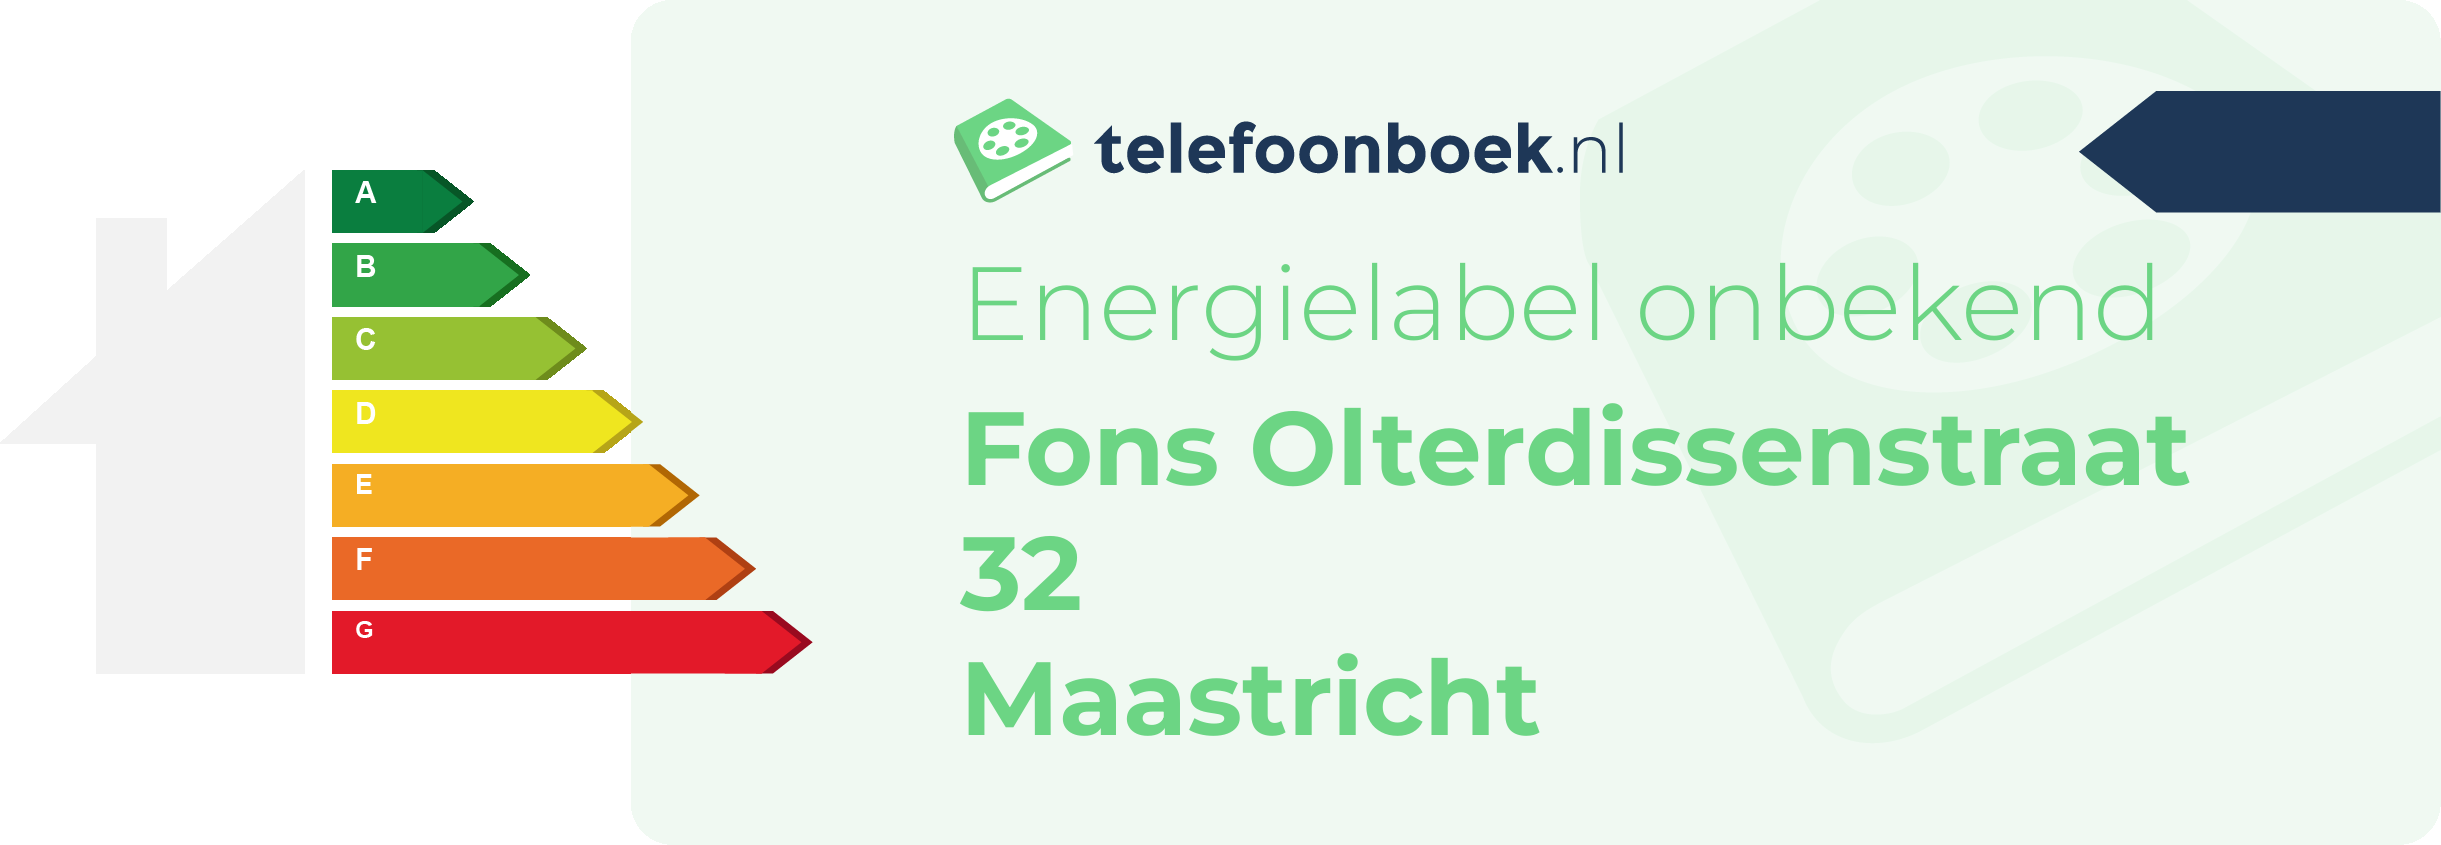 Energielabel Fons Olterdissenstraat 32 Maastricht